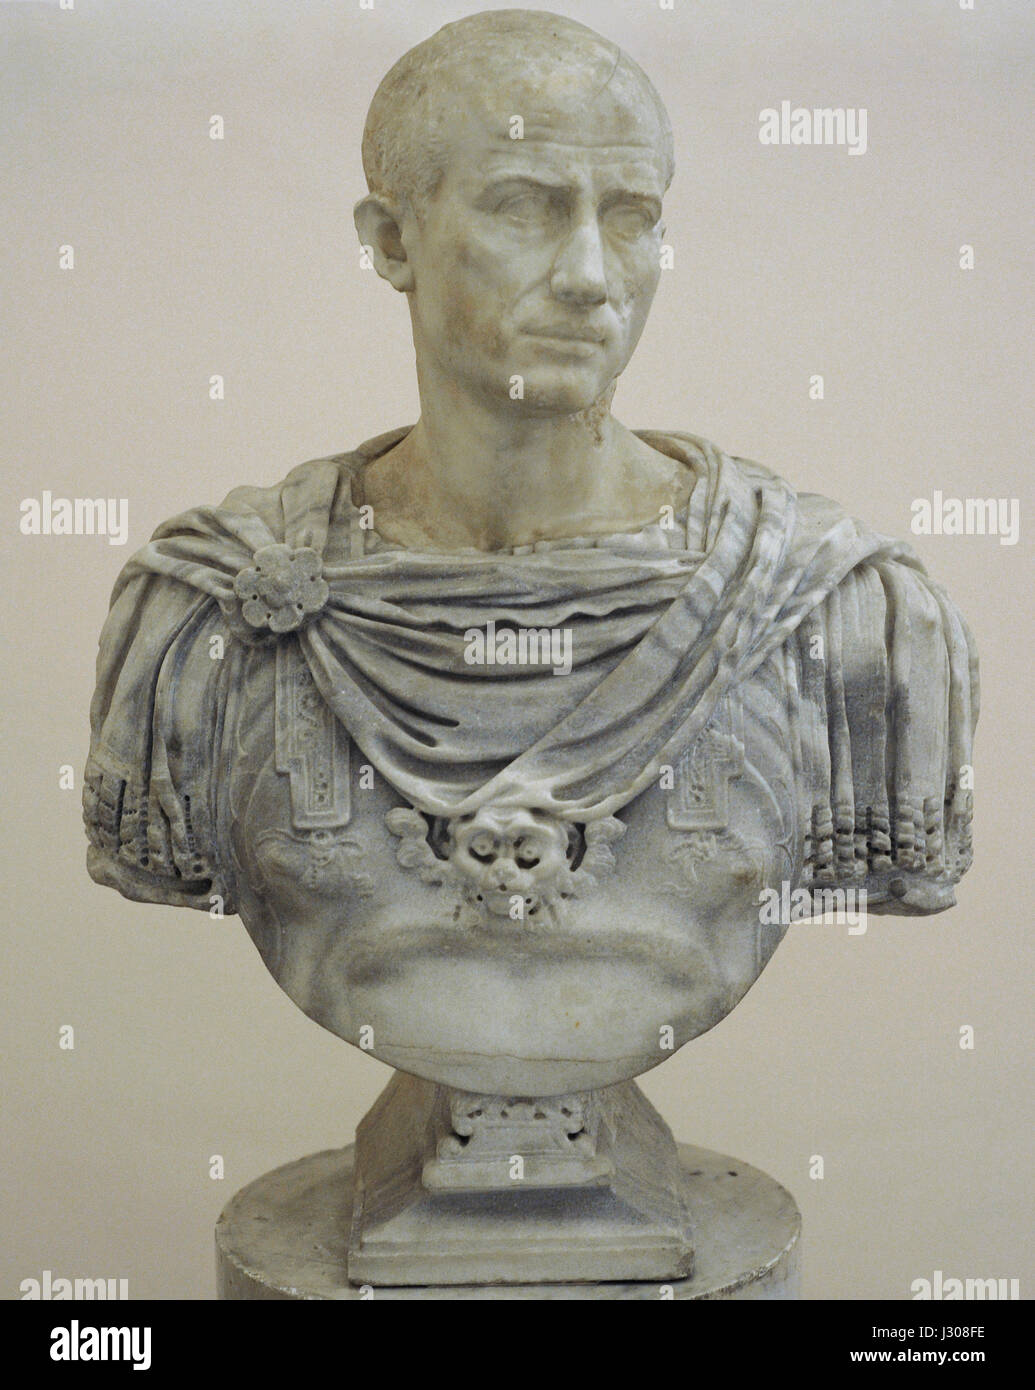 Portrait non identifié. Buste moderne par le sculpteur italien Guglielmo della Porta (ch. 1500-1577). Guglielmo della Porta. Musée Archéologique National. Naples. L'Italie. Banque D'Images